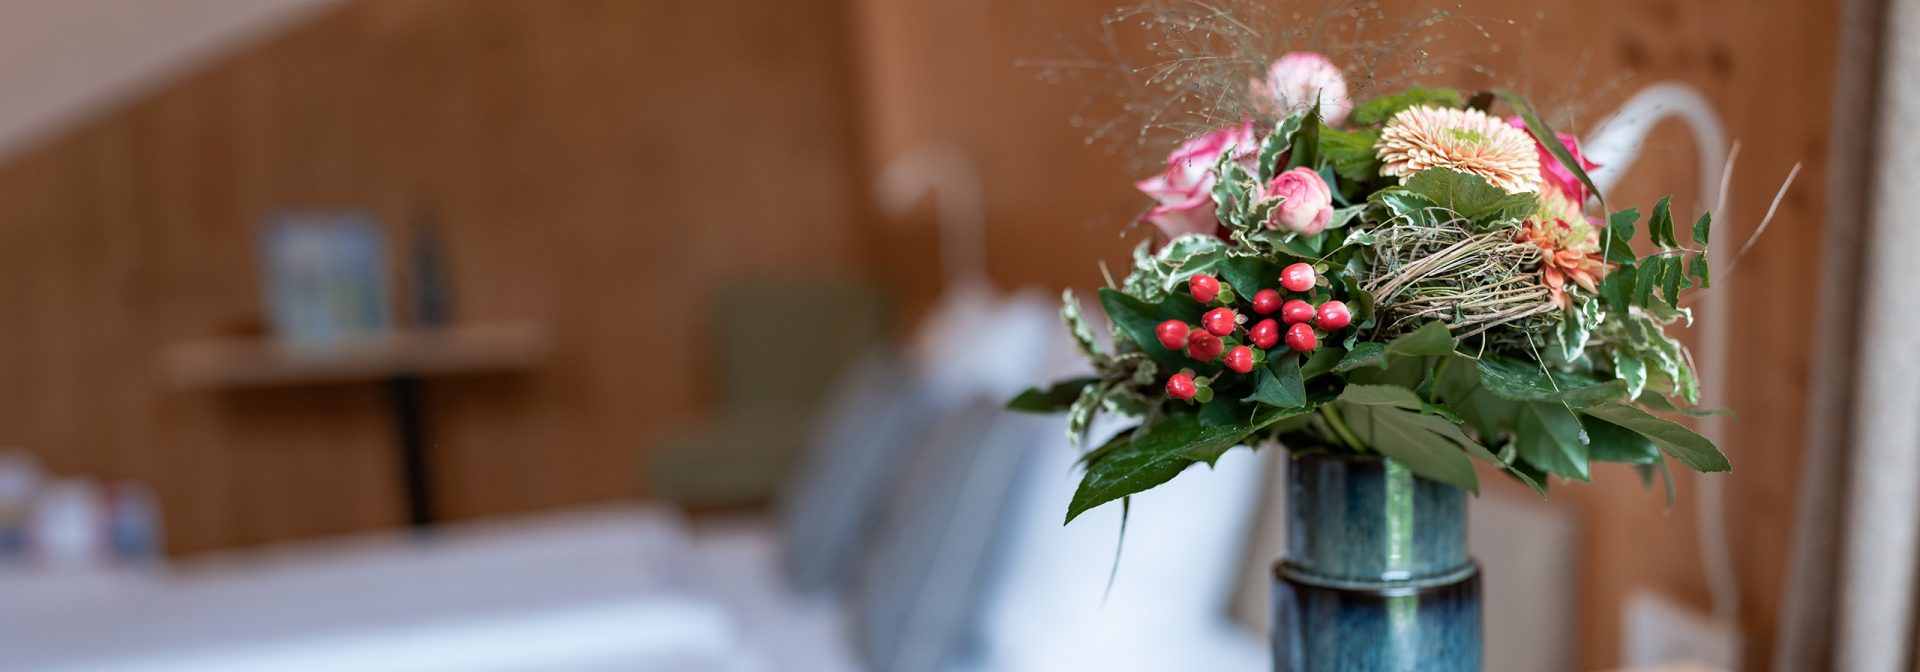 Beispielbild einer zubuchbaren Leistung: Bild eines Blumenstraußes neben dem Bett.